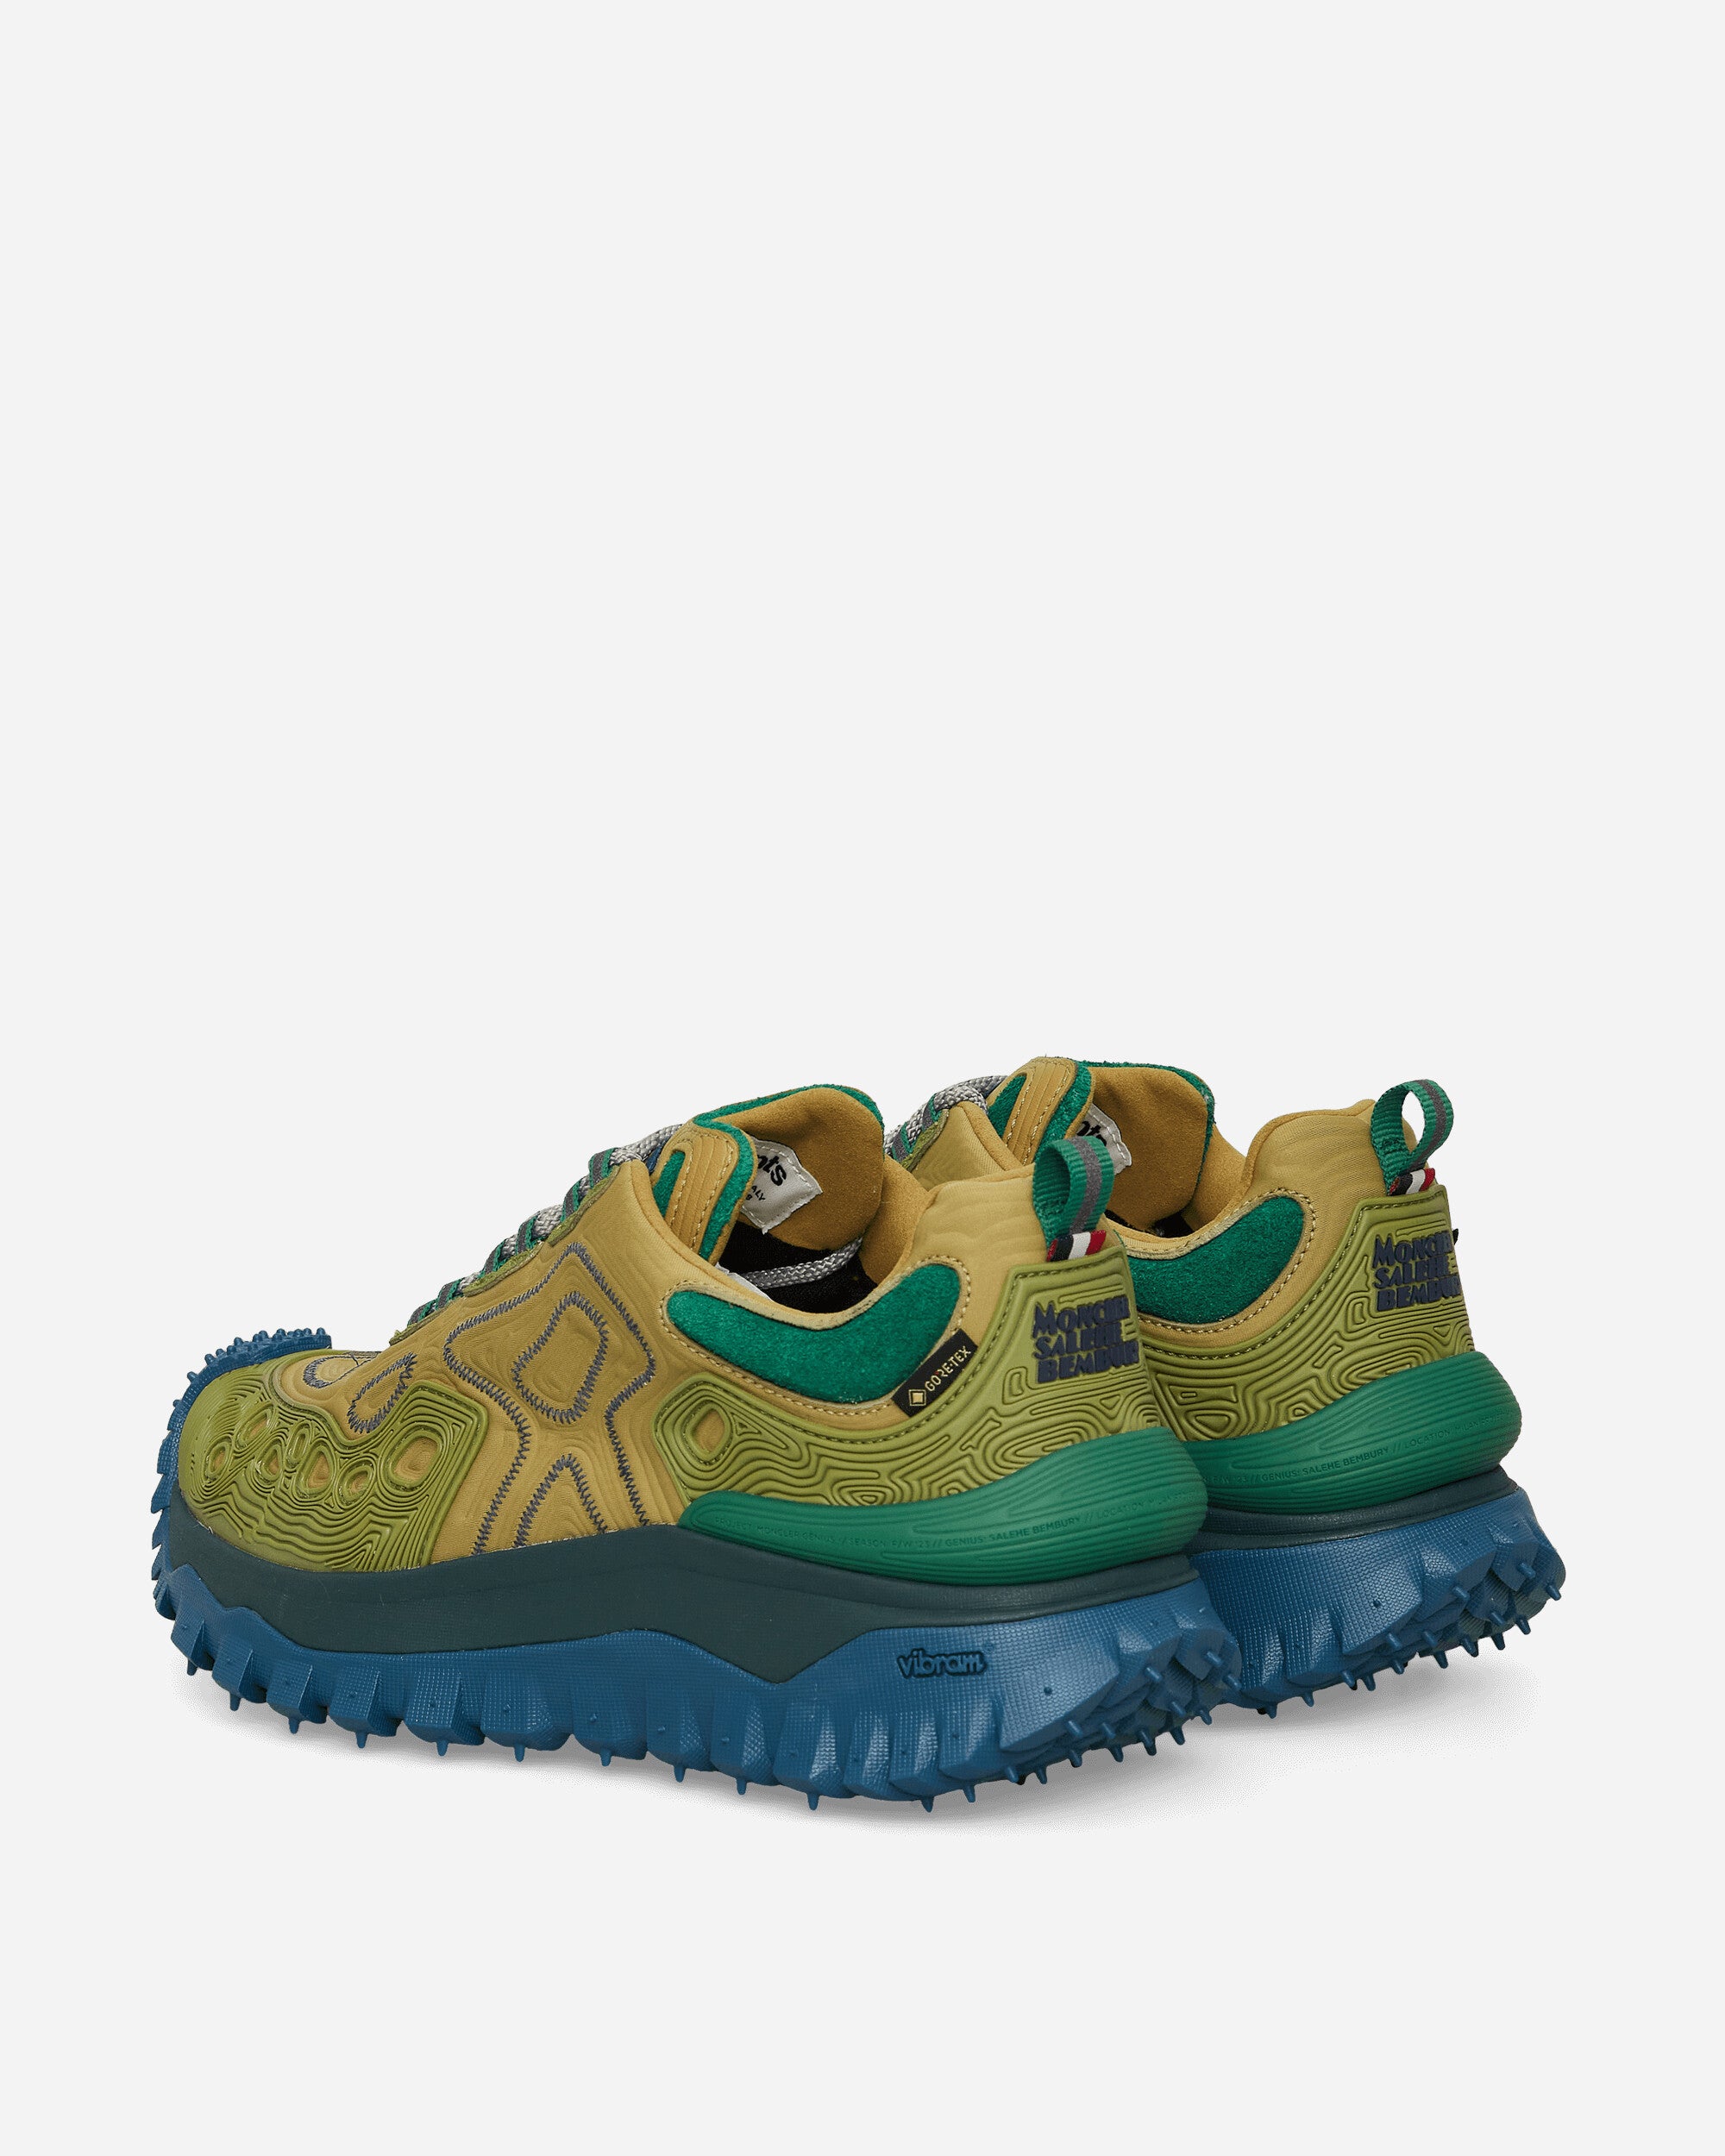 Moncler Genius Trailgrip Grain X Salehe Bembury Green Sneakers Low 4M00010M3275 23E